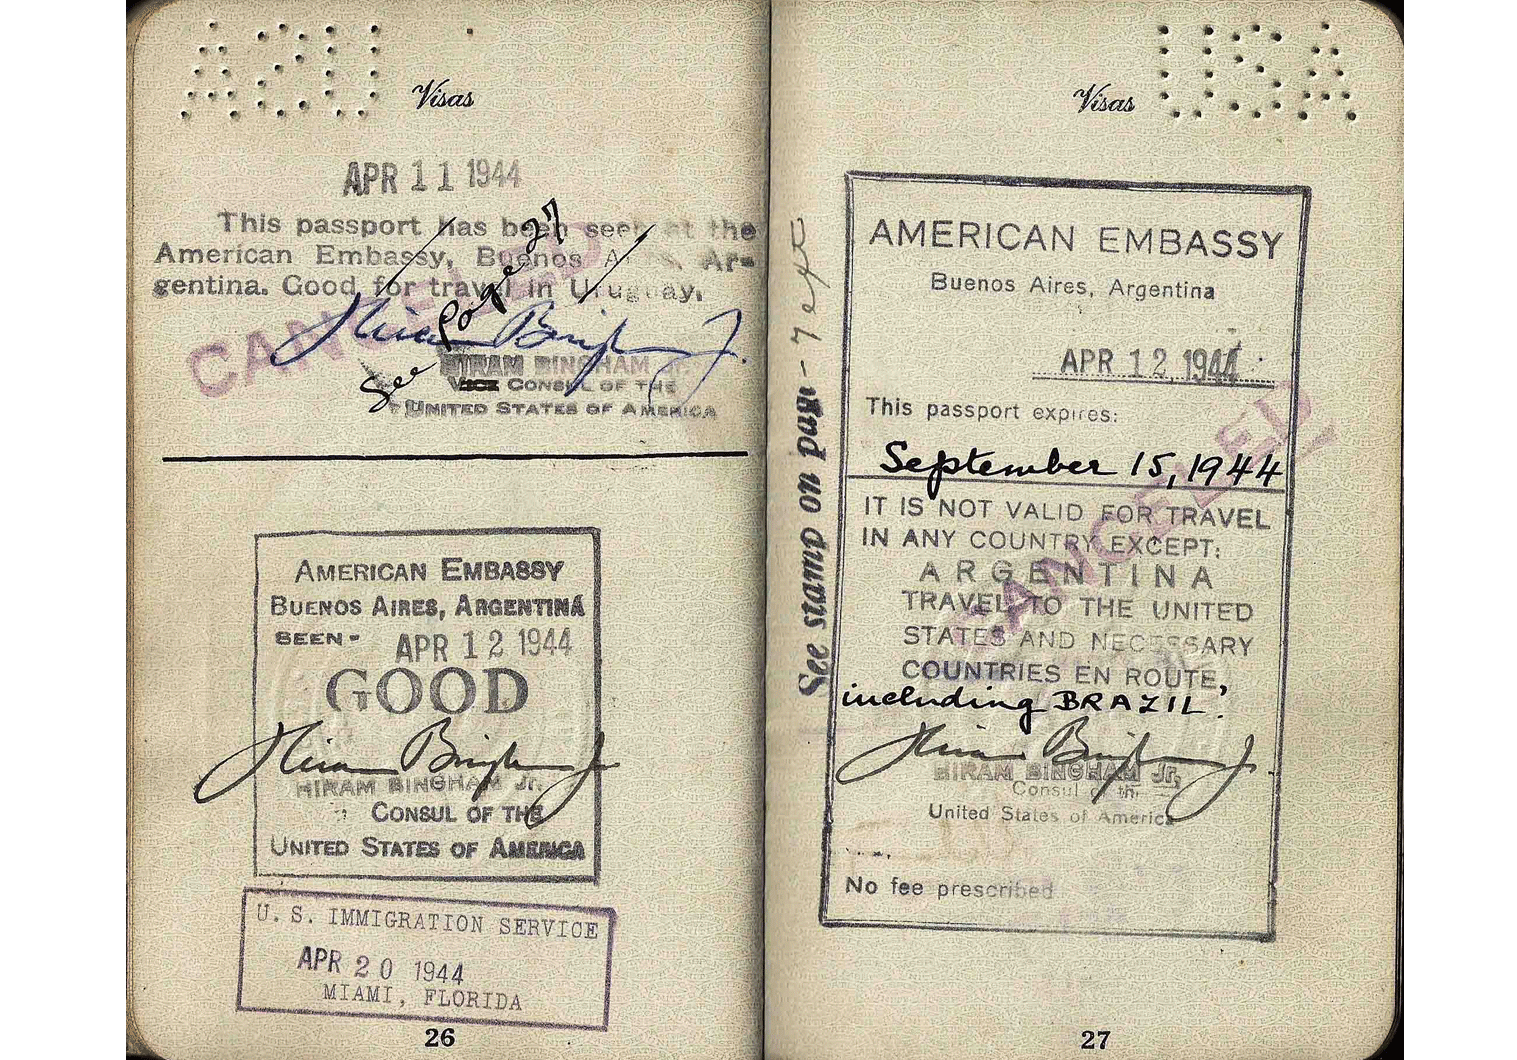 Hiram Bingham signed passport